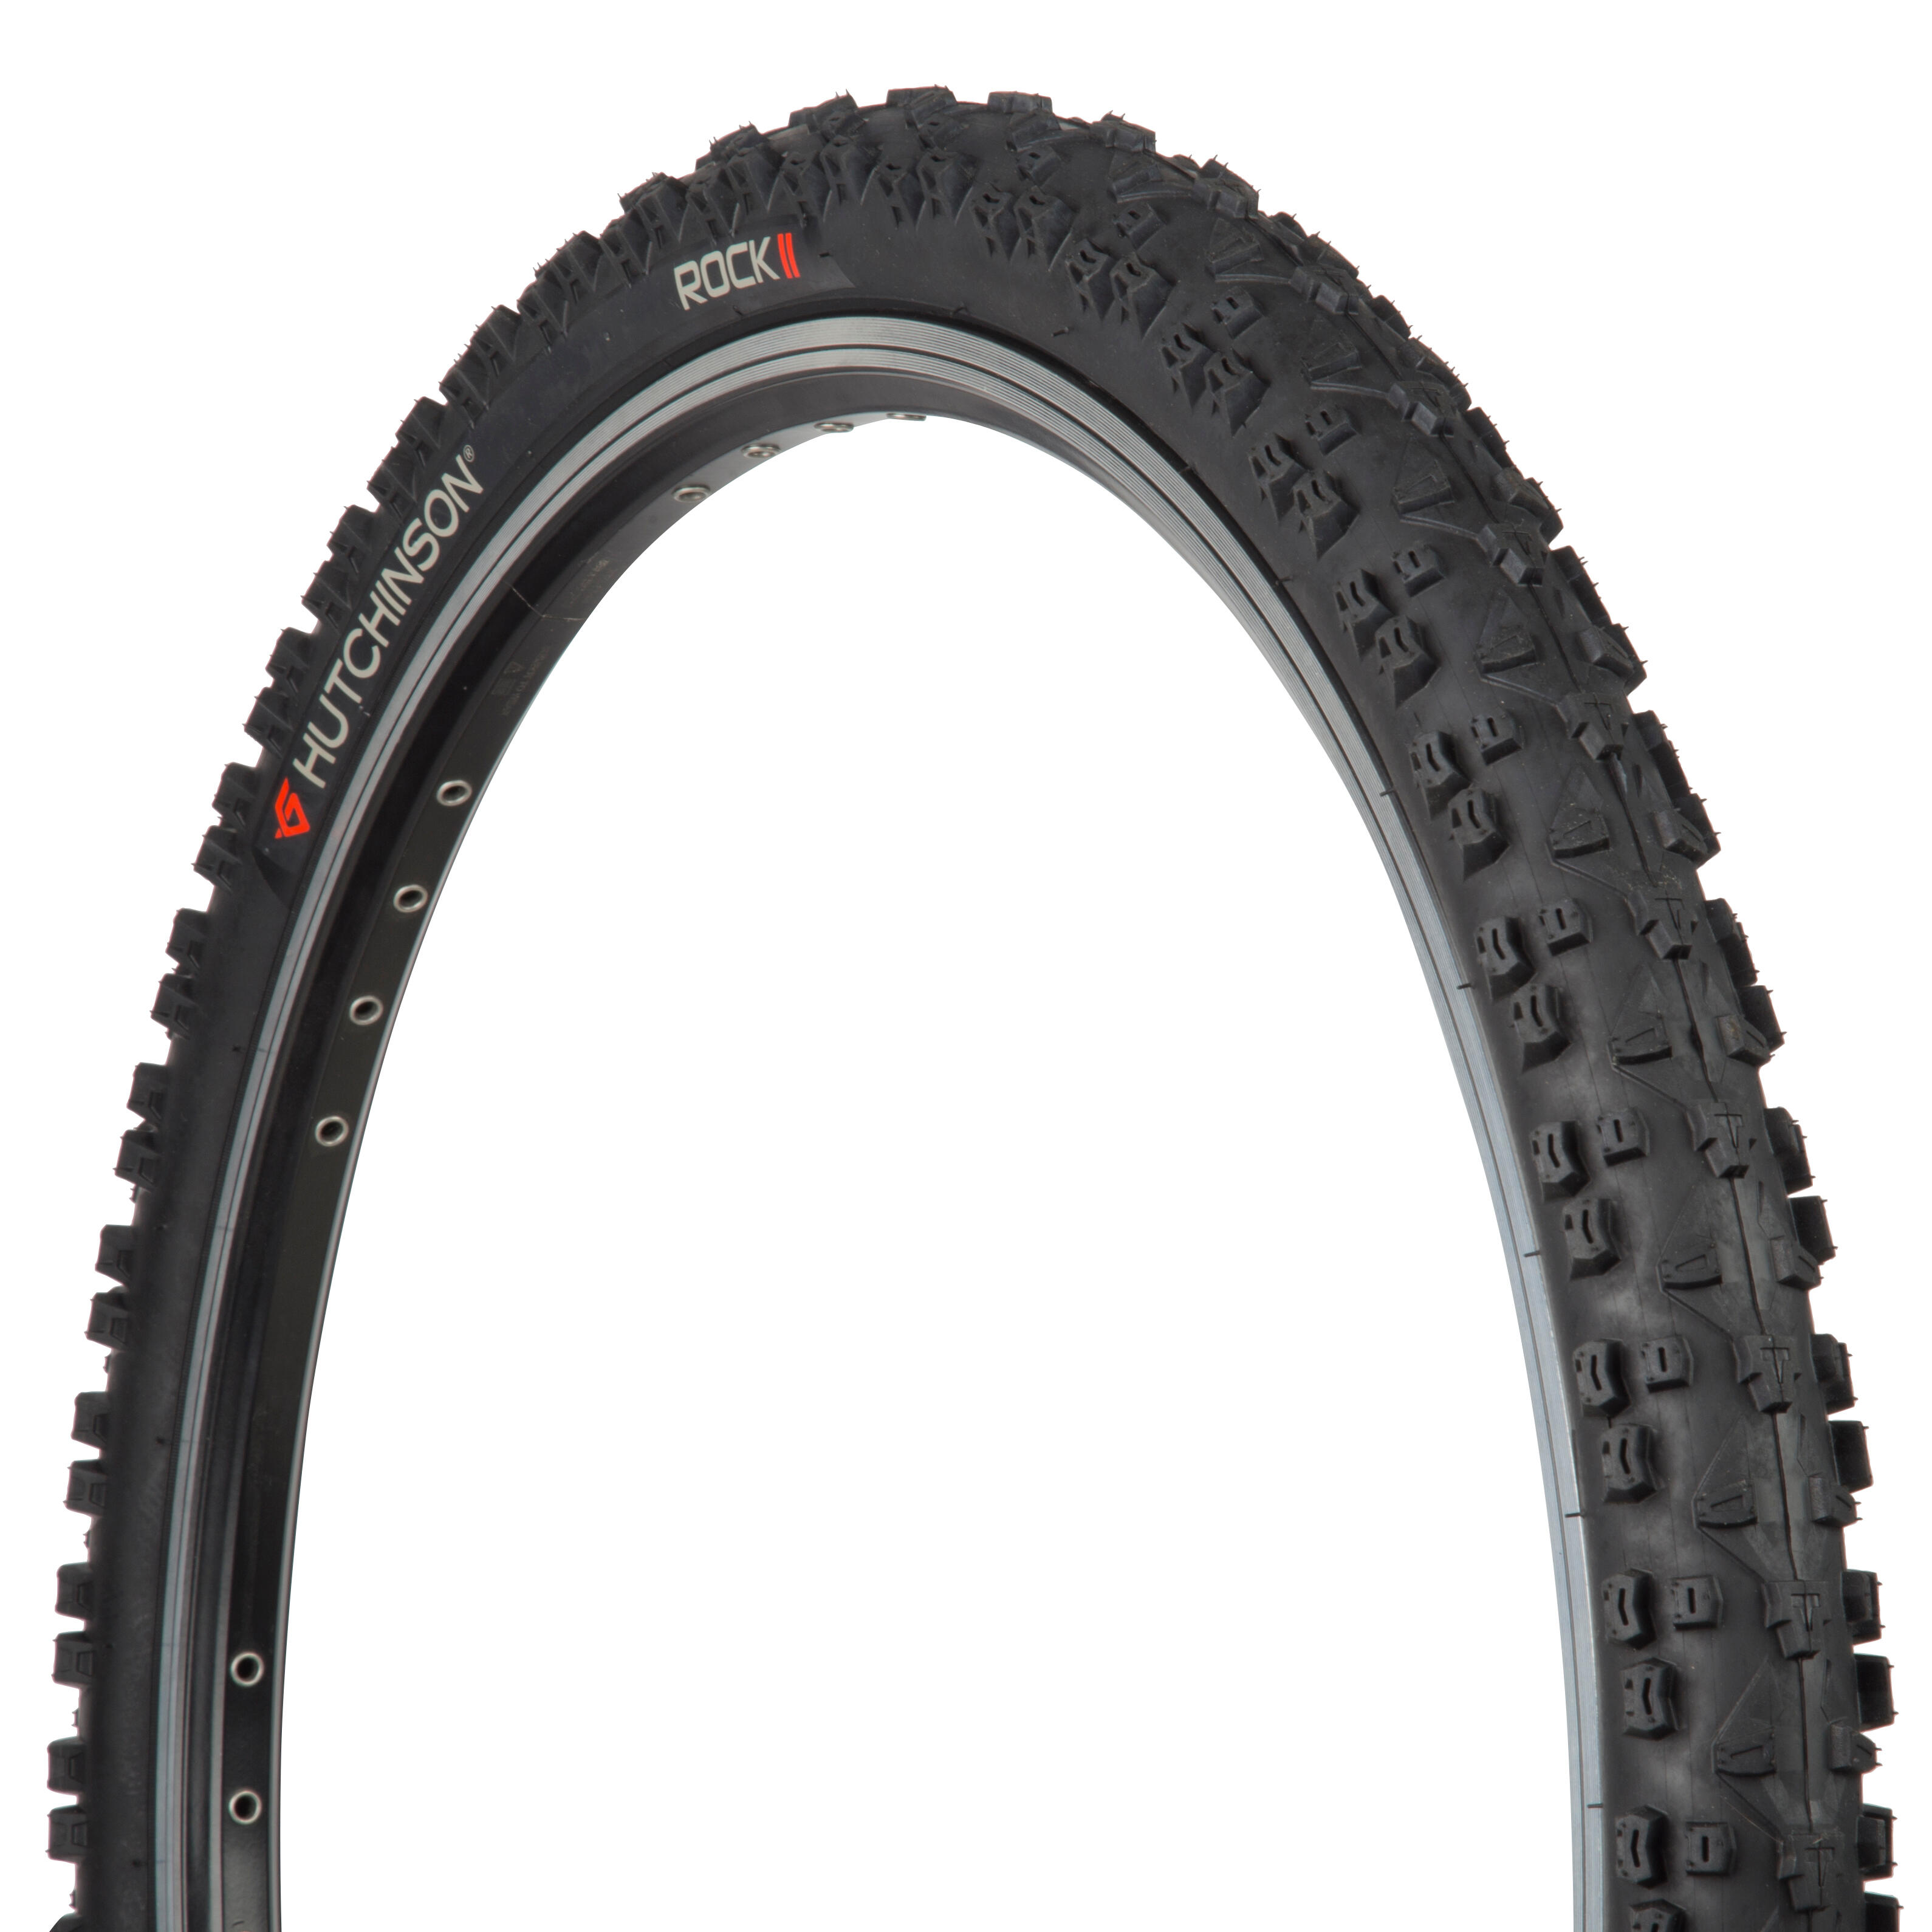 26x2 mountain bike tires